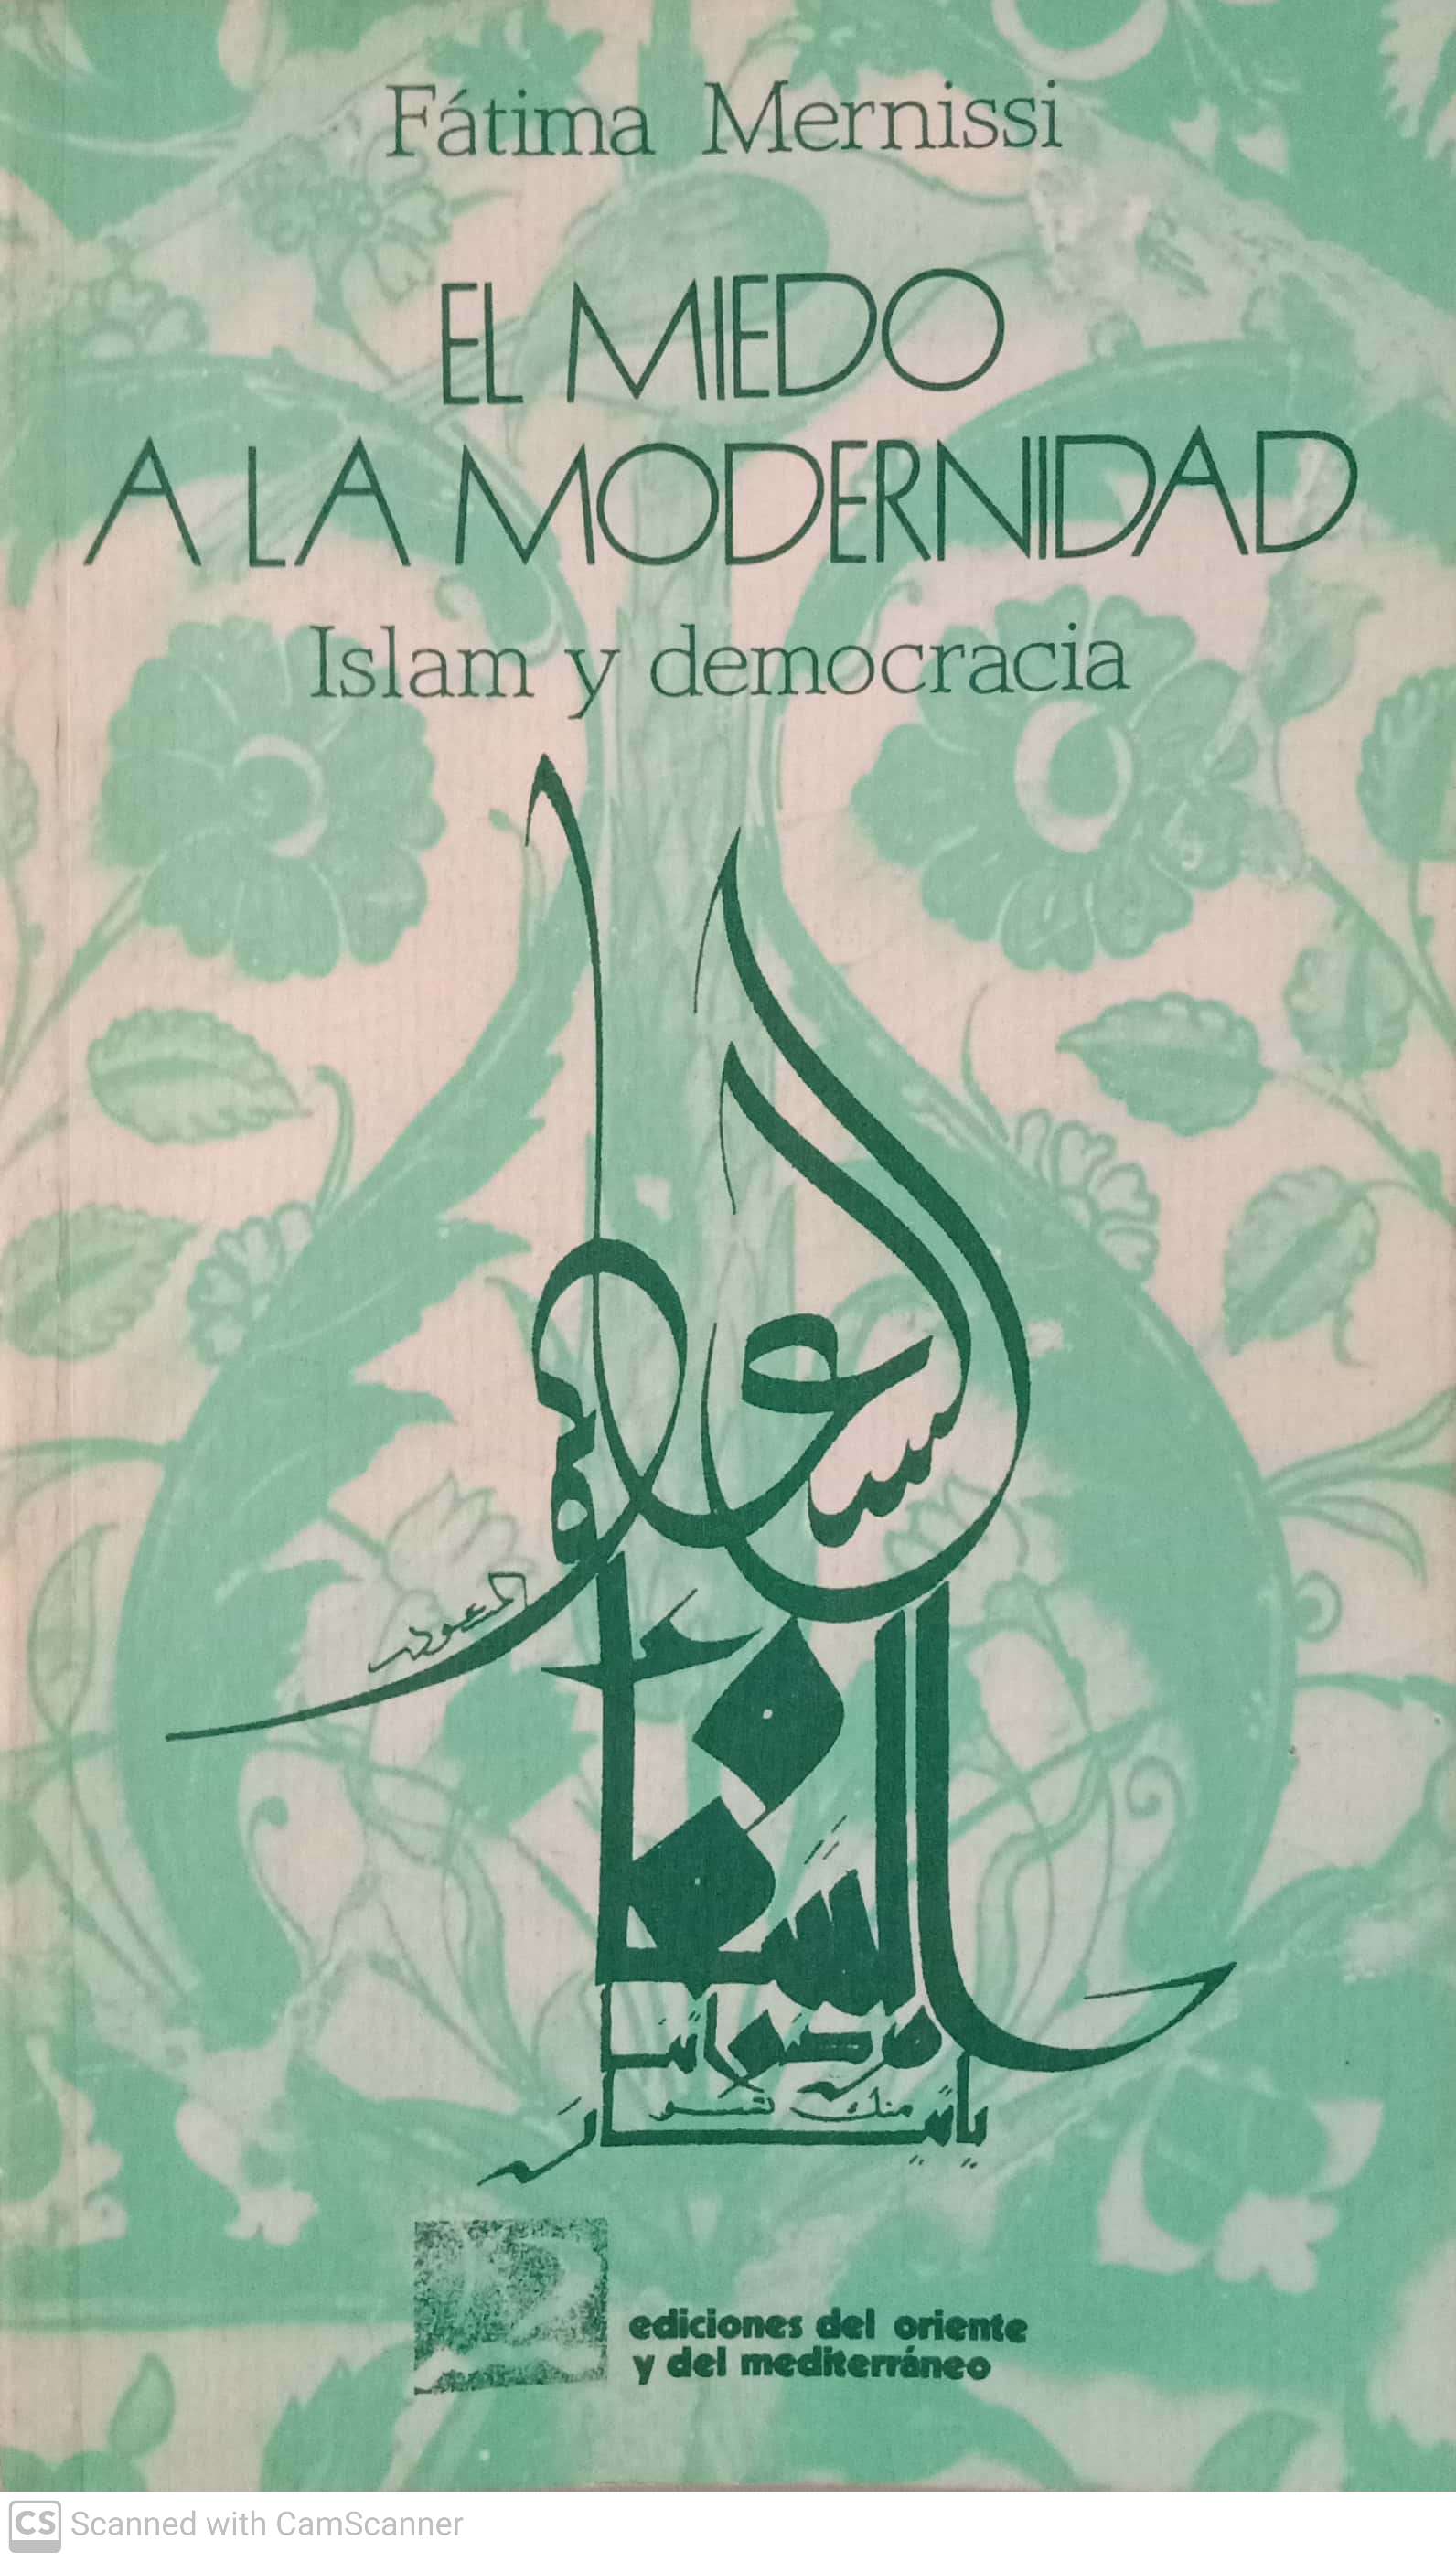 El miedo a la modernidad. Islam y democracia - Fátima Mernissi